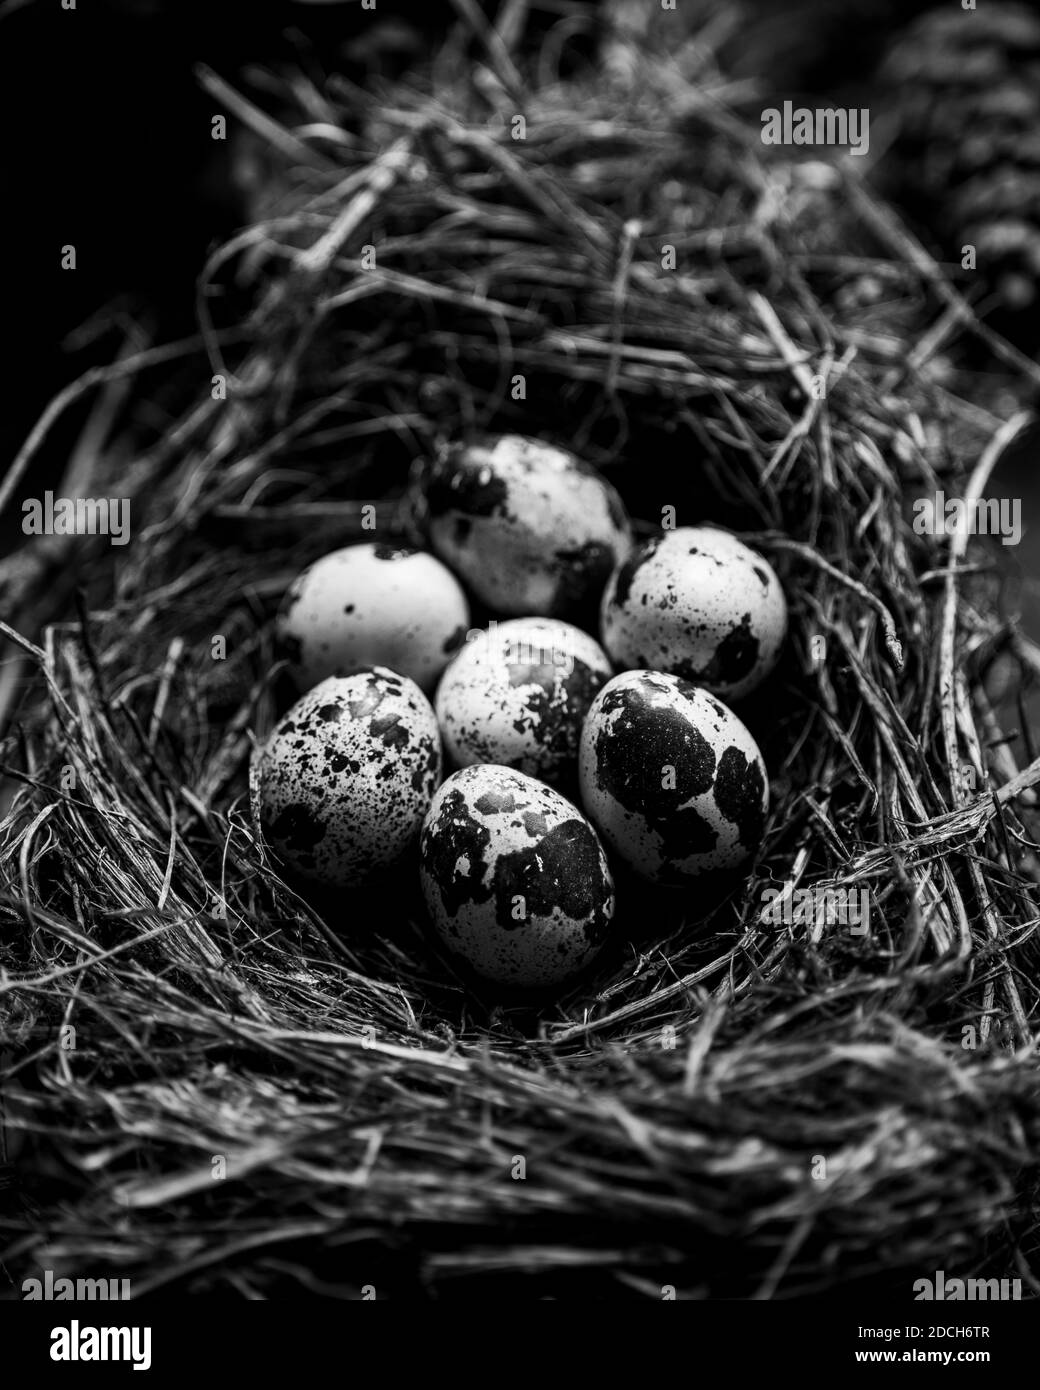 Hier von einer Wachtel in einer schale,rohe wachtel eier, schwarz-weiß Fotografie von Wachteleiern in einem Nest,Wachteleiern im Nest, Stockfoto